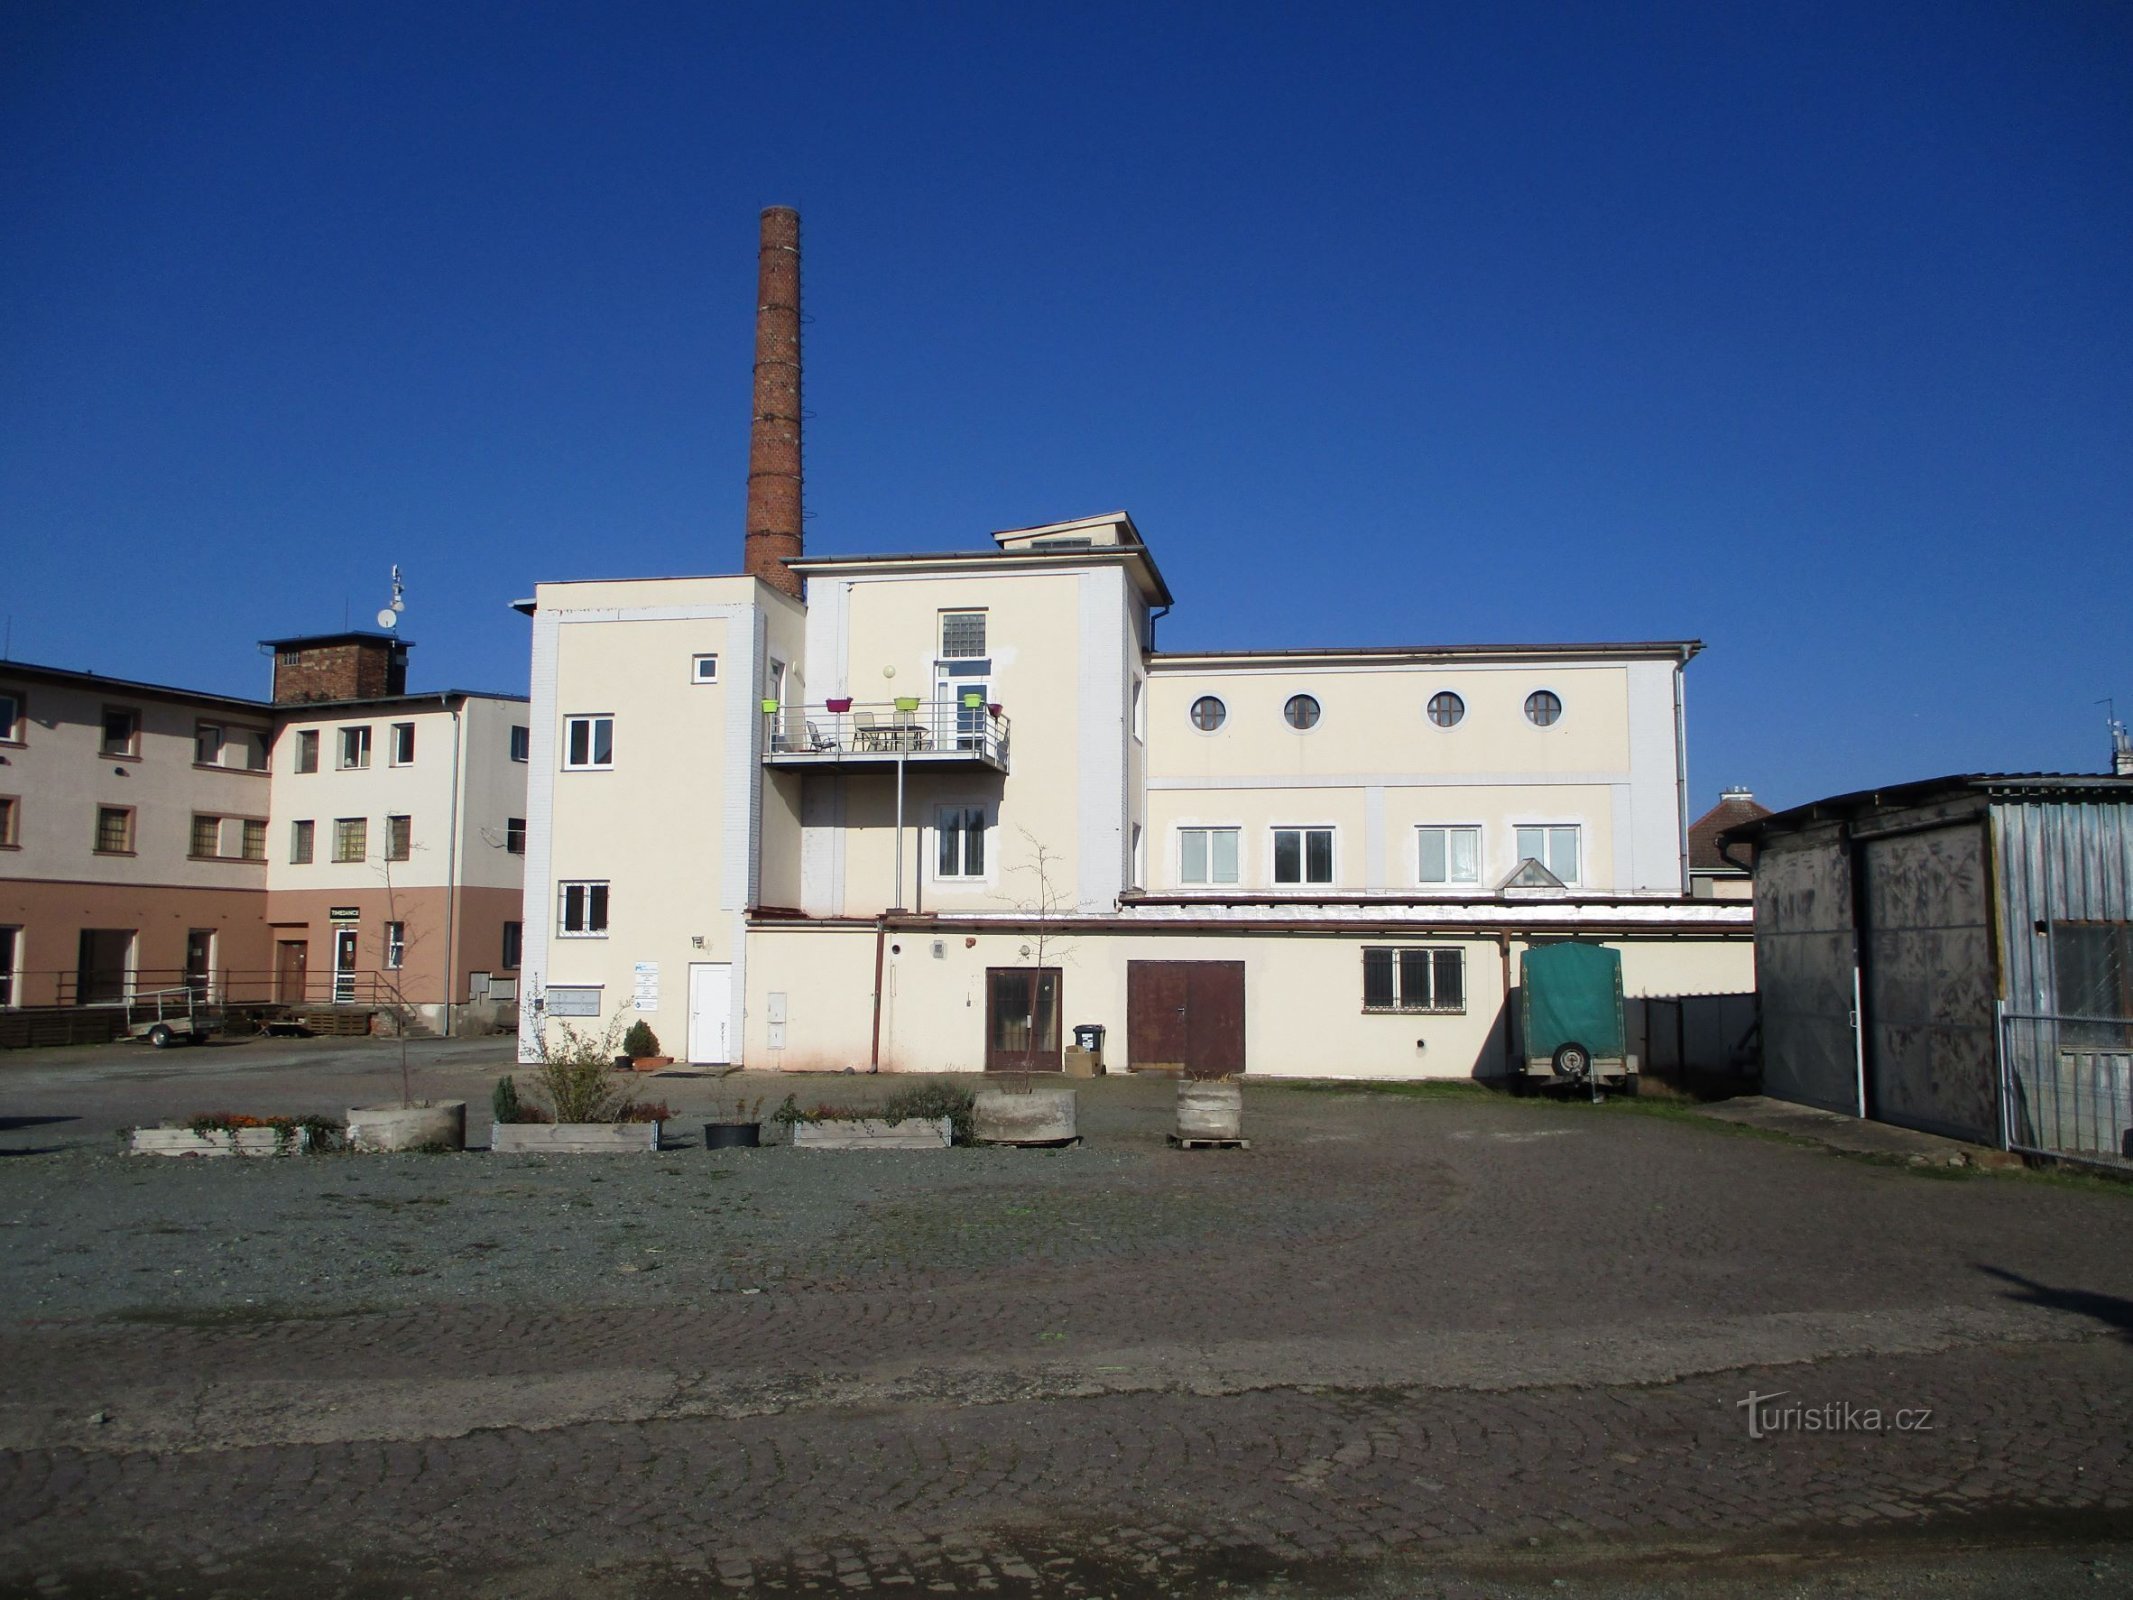 На Okrouhlík, № 1630, колишня кооперативна пекарня (Градец Кралове, 7.11.2020 листопада XNUMX р.)